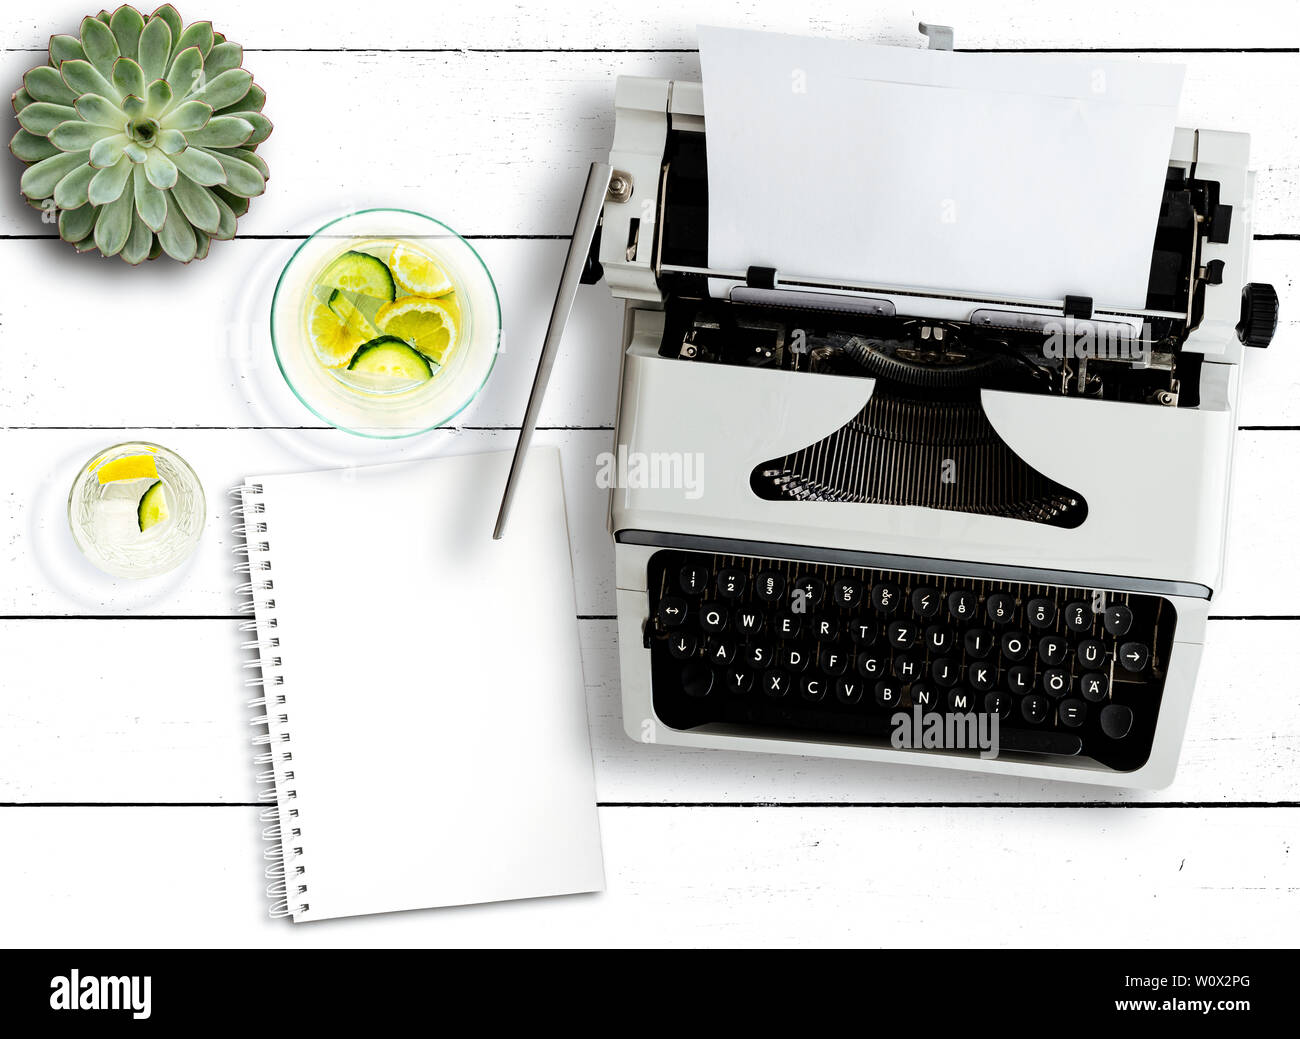 Vue de dessus de la vieille machine à écrire, plante succulente, carafe à eau et bloc-notes sur la table rustique en bois blanc Banque D'Images